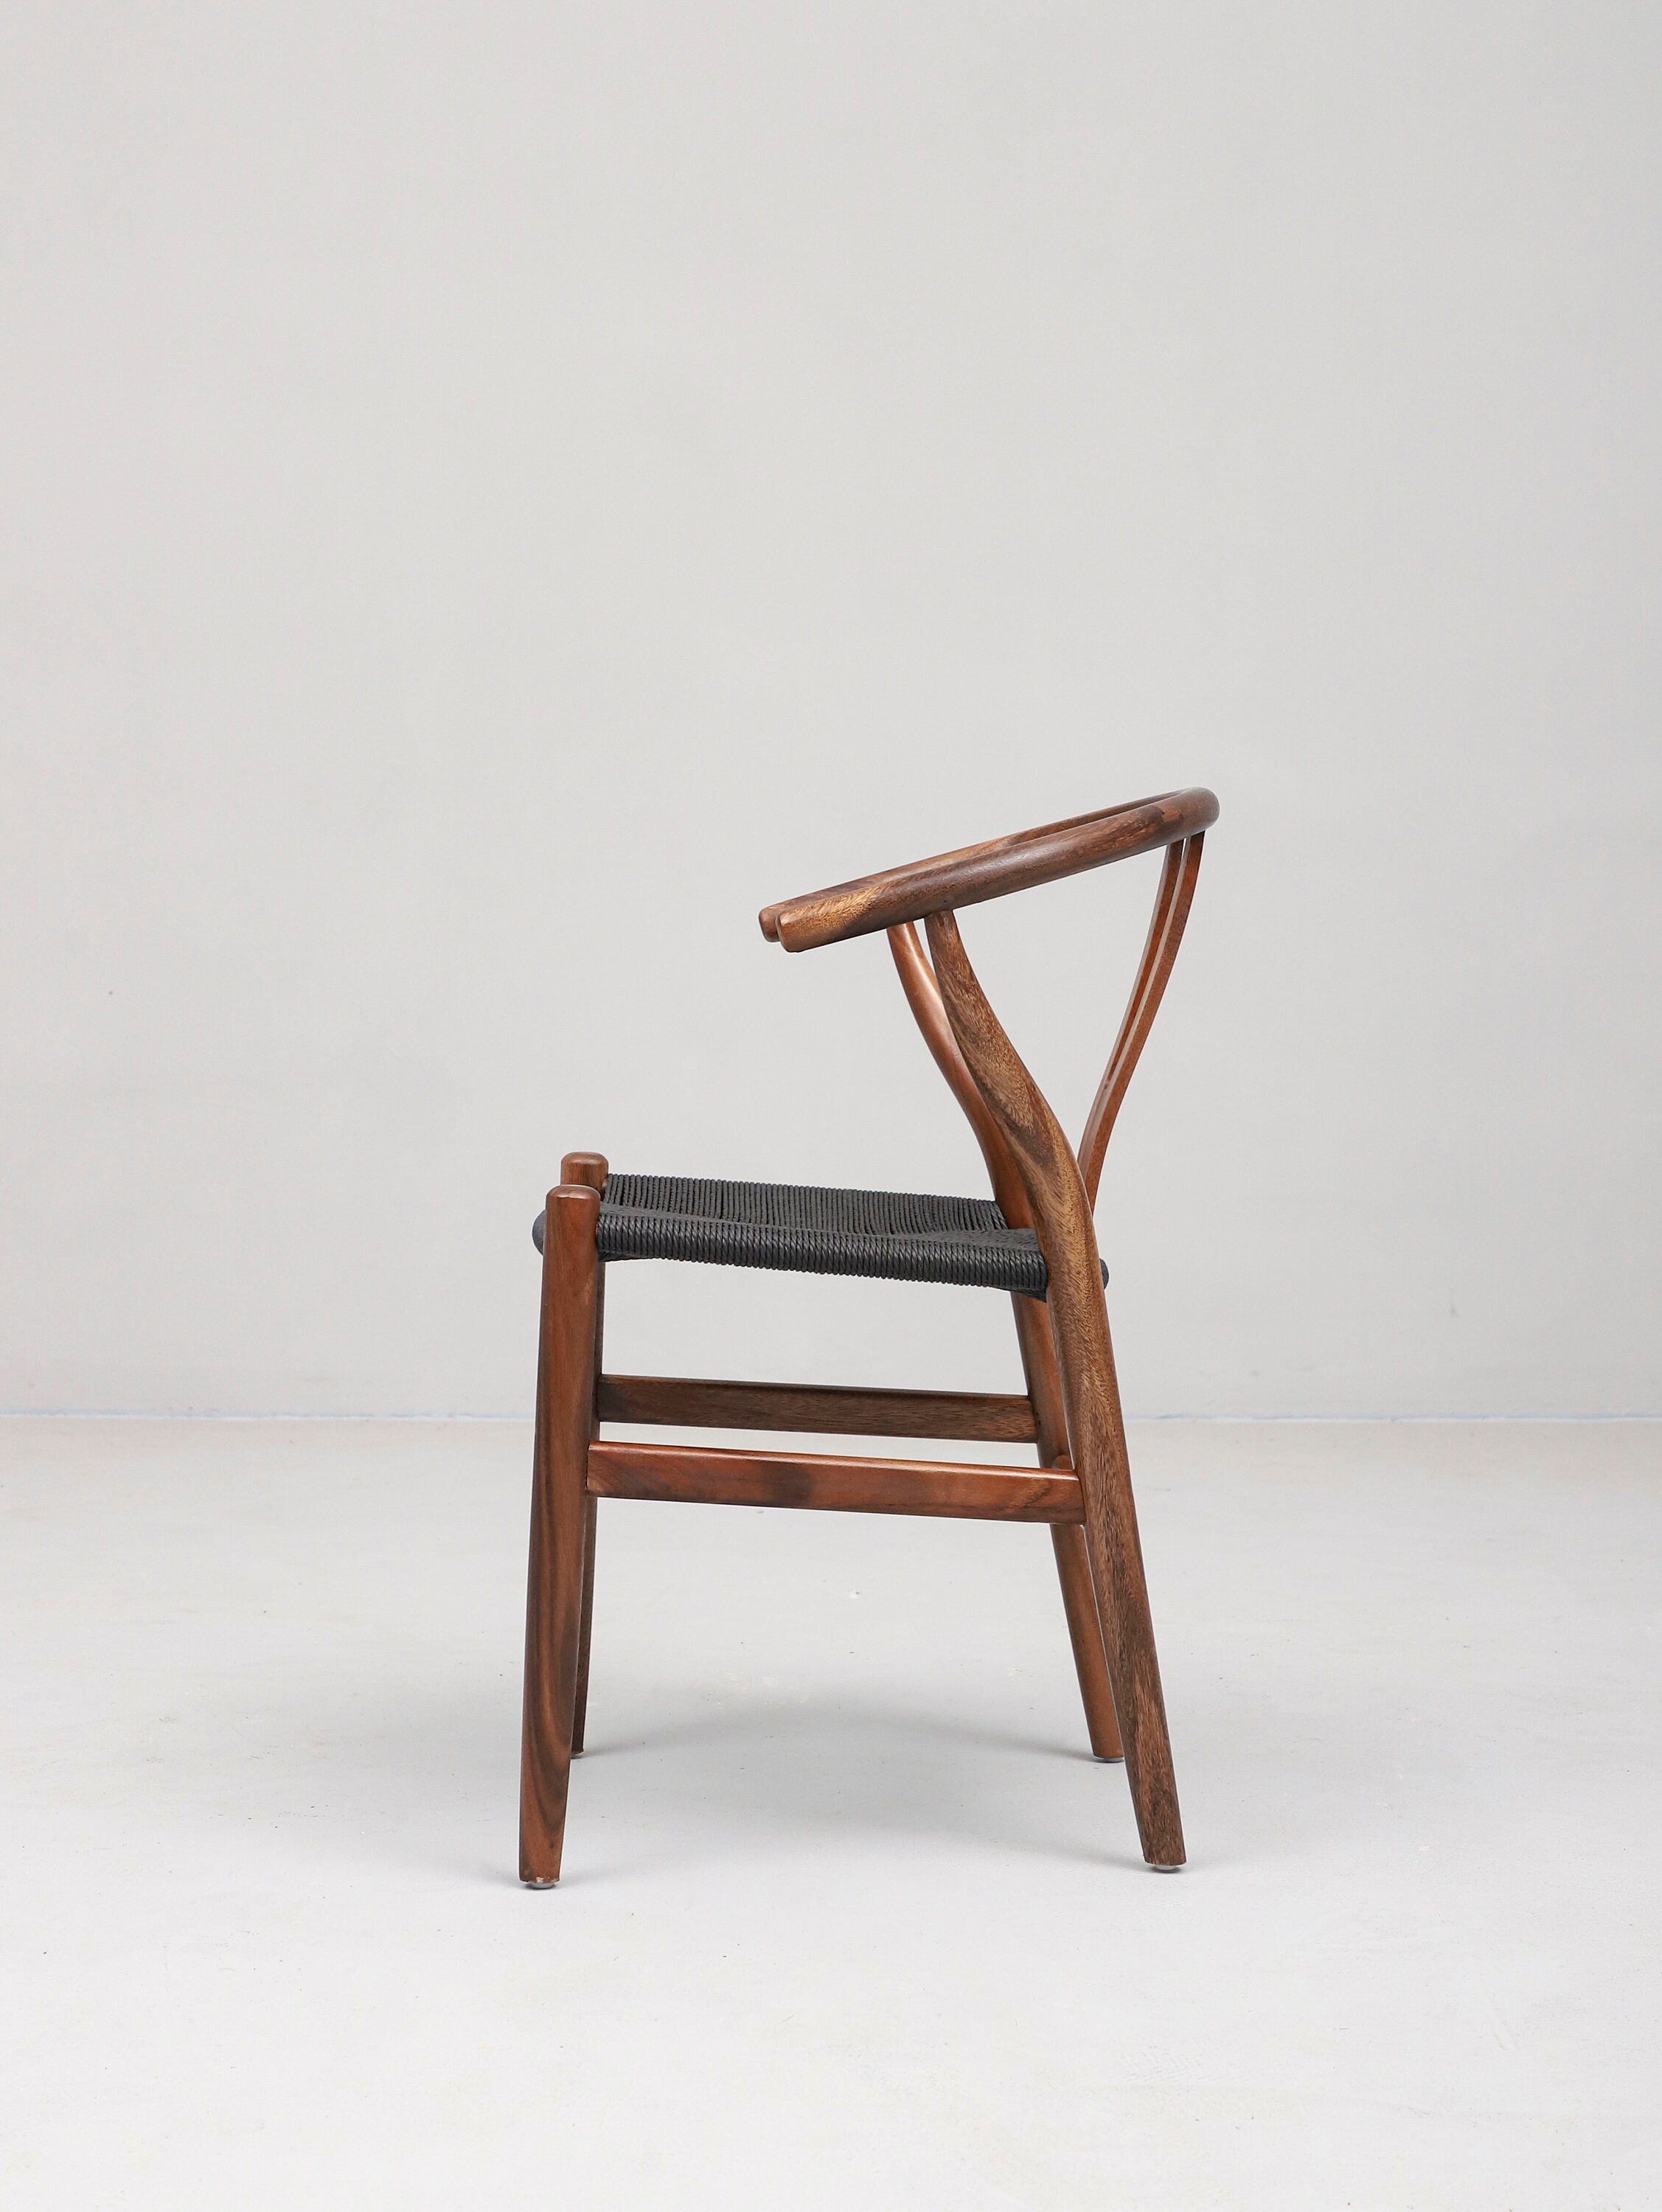 كرسي خشب مقعد القنب، كرسي خشب تصميم بسيط، كرسي منتصف القرن الحديث، كرسي جلد، كرسي طعام جلدي